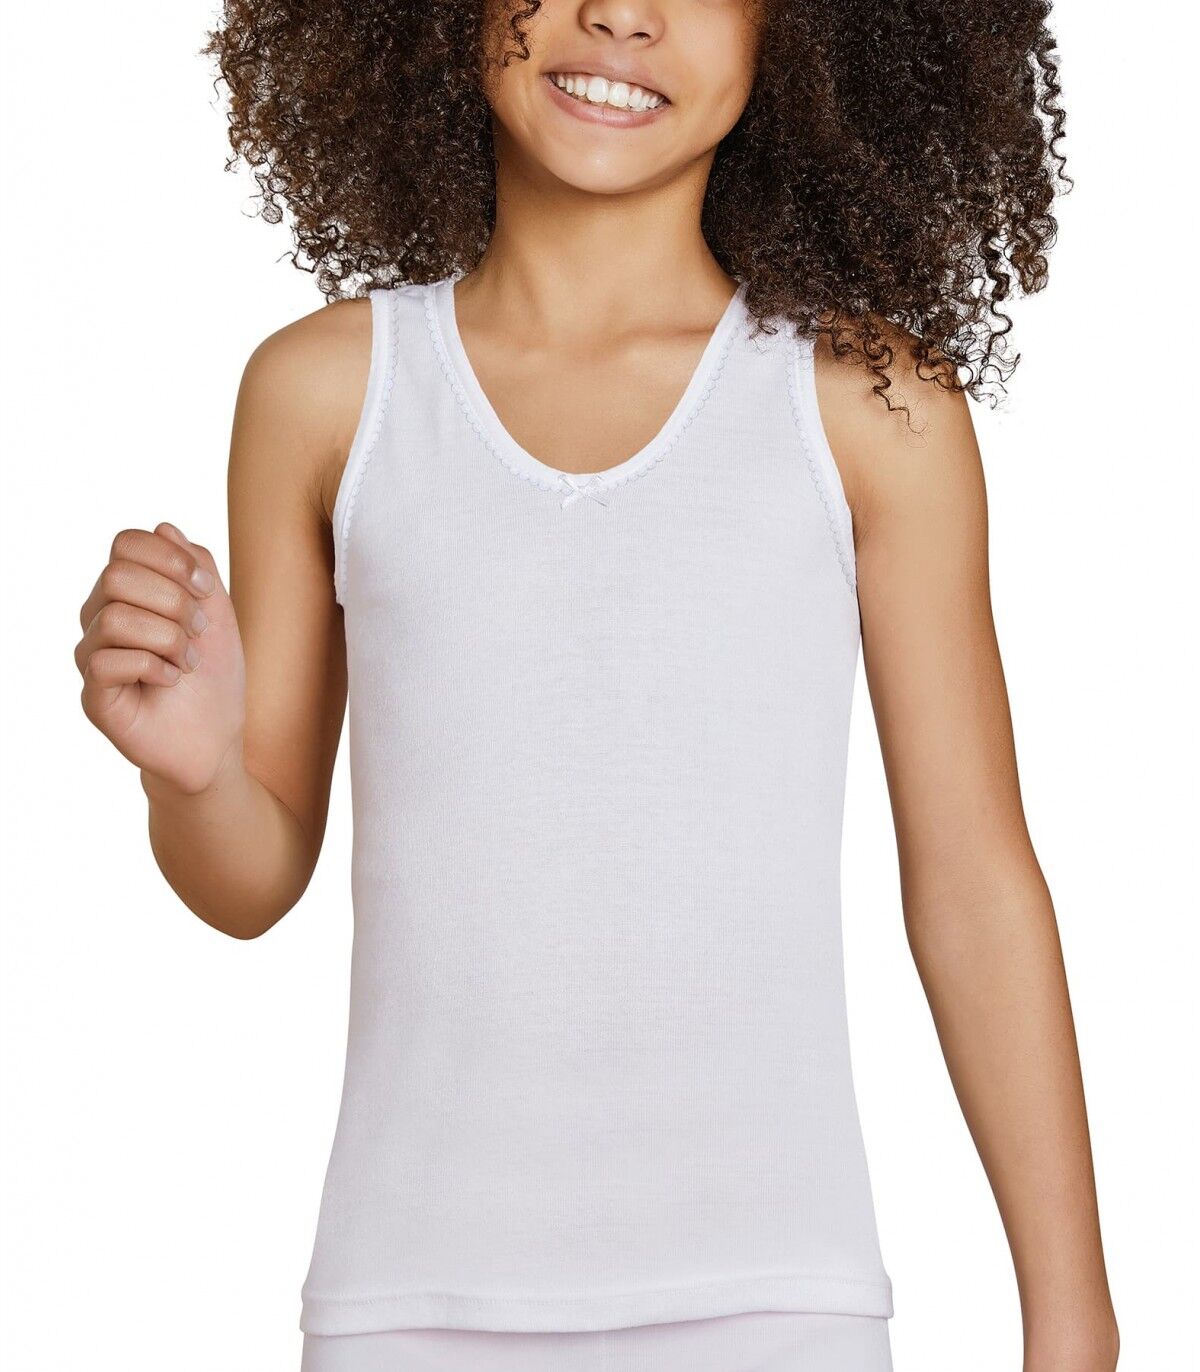 Camiseta infantil Tirantes Ysabel Mora 18306 14 Blanco